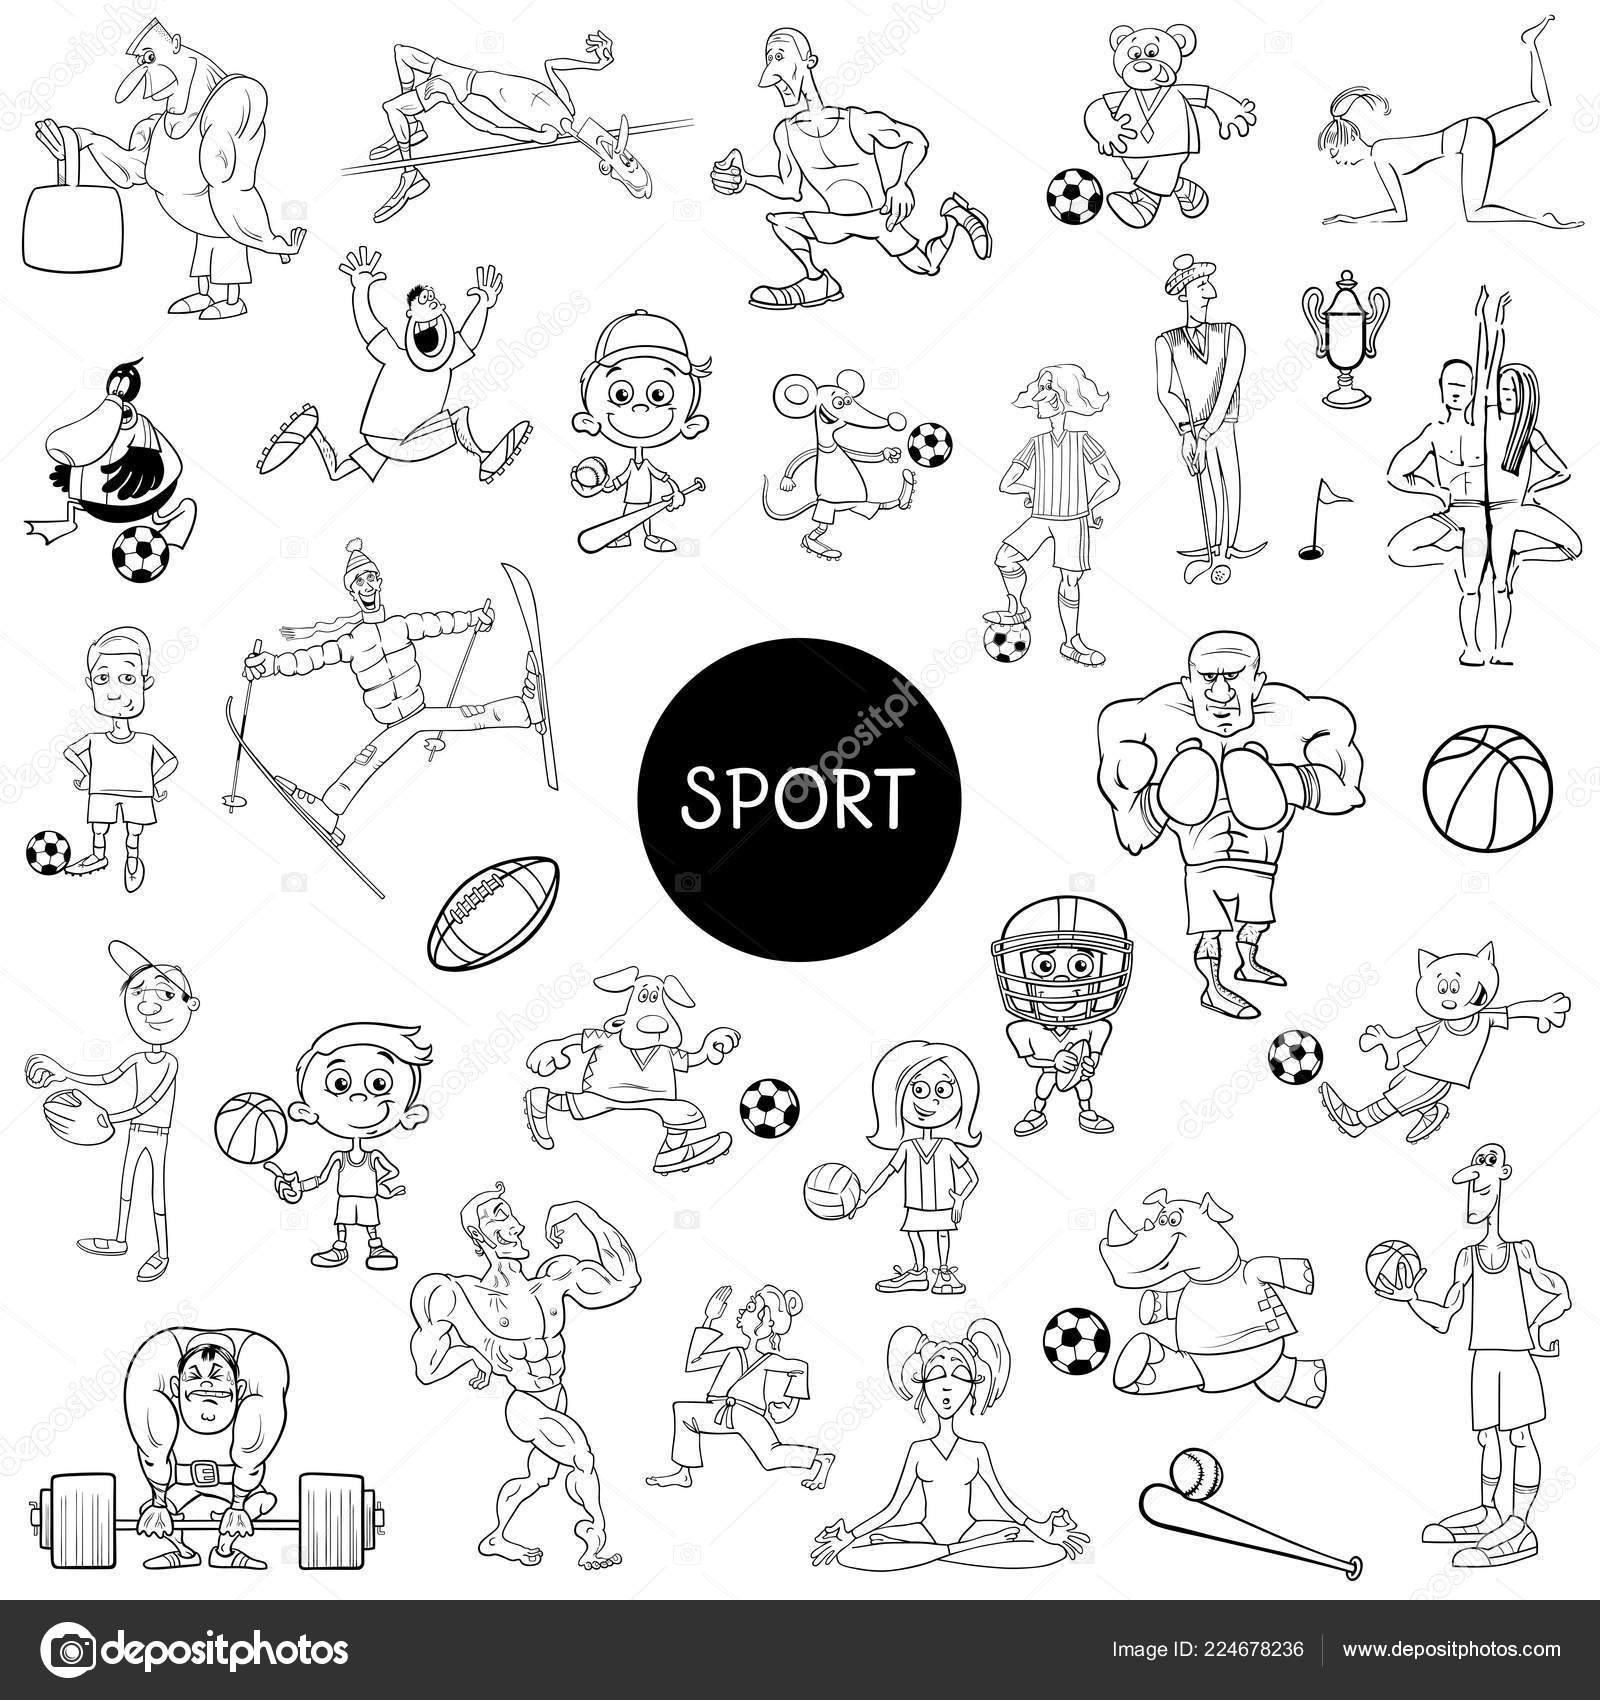 Vetores de Esboço De Página De Coloração De Gato De Desenho Animado Jogando Futebol  Jogo De Futebol Livro De Colorir Para Crianças e mais imagens de Animal -  iStock